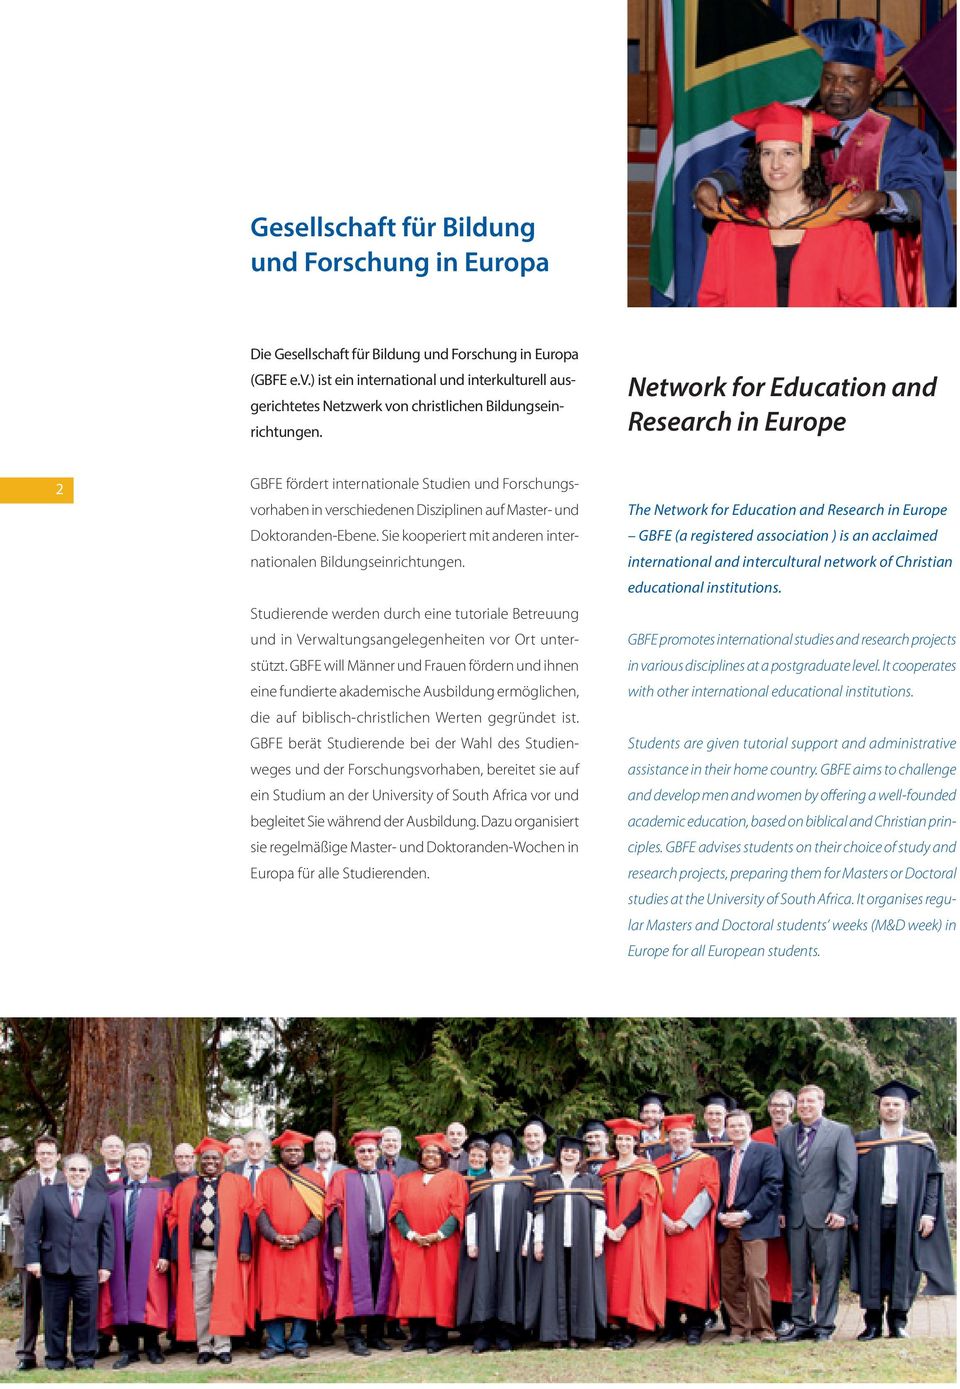 Network for Education and Research in Europe 2 GBFE fördert internationale Studien und Forschungsvorhaben in verschiedenen Disziplinen auf Master- und Doktoranden-Ebene.